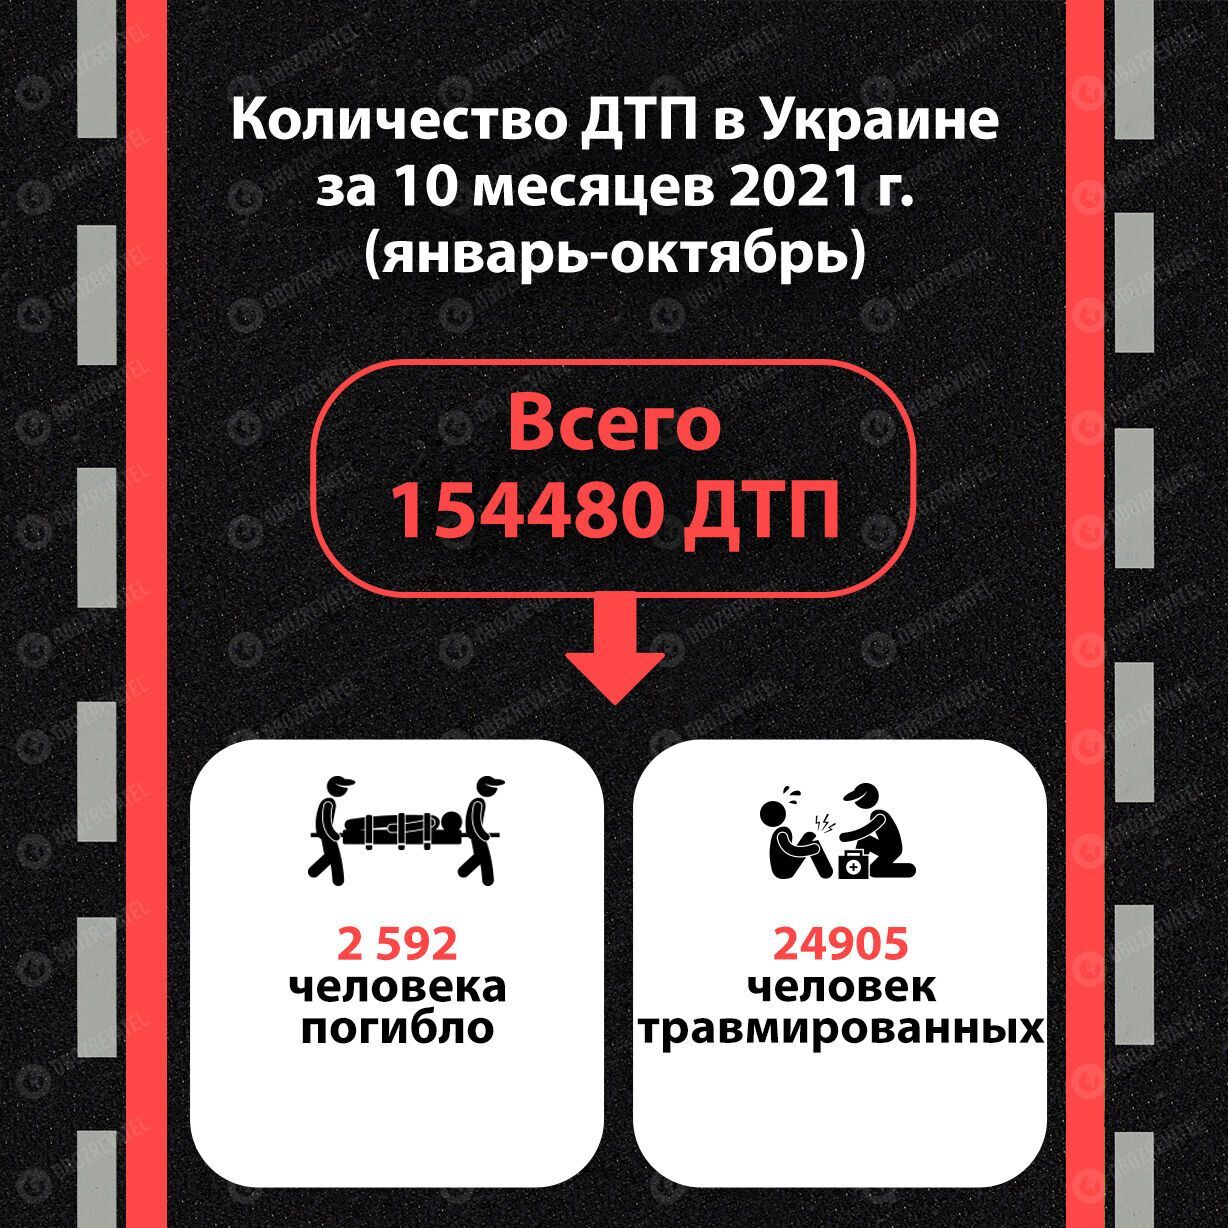 Статистика ДТП в Украине 2021.